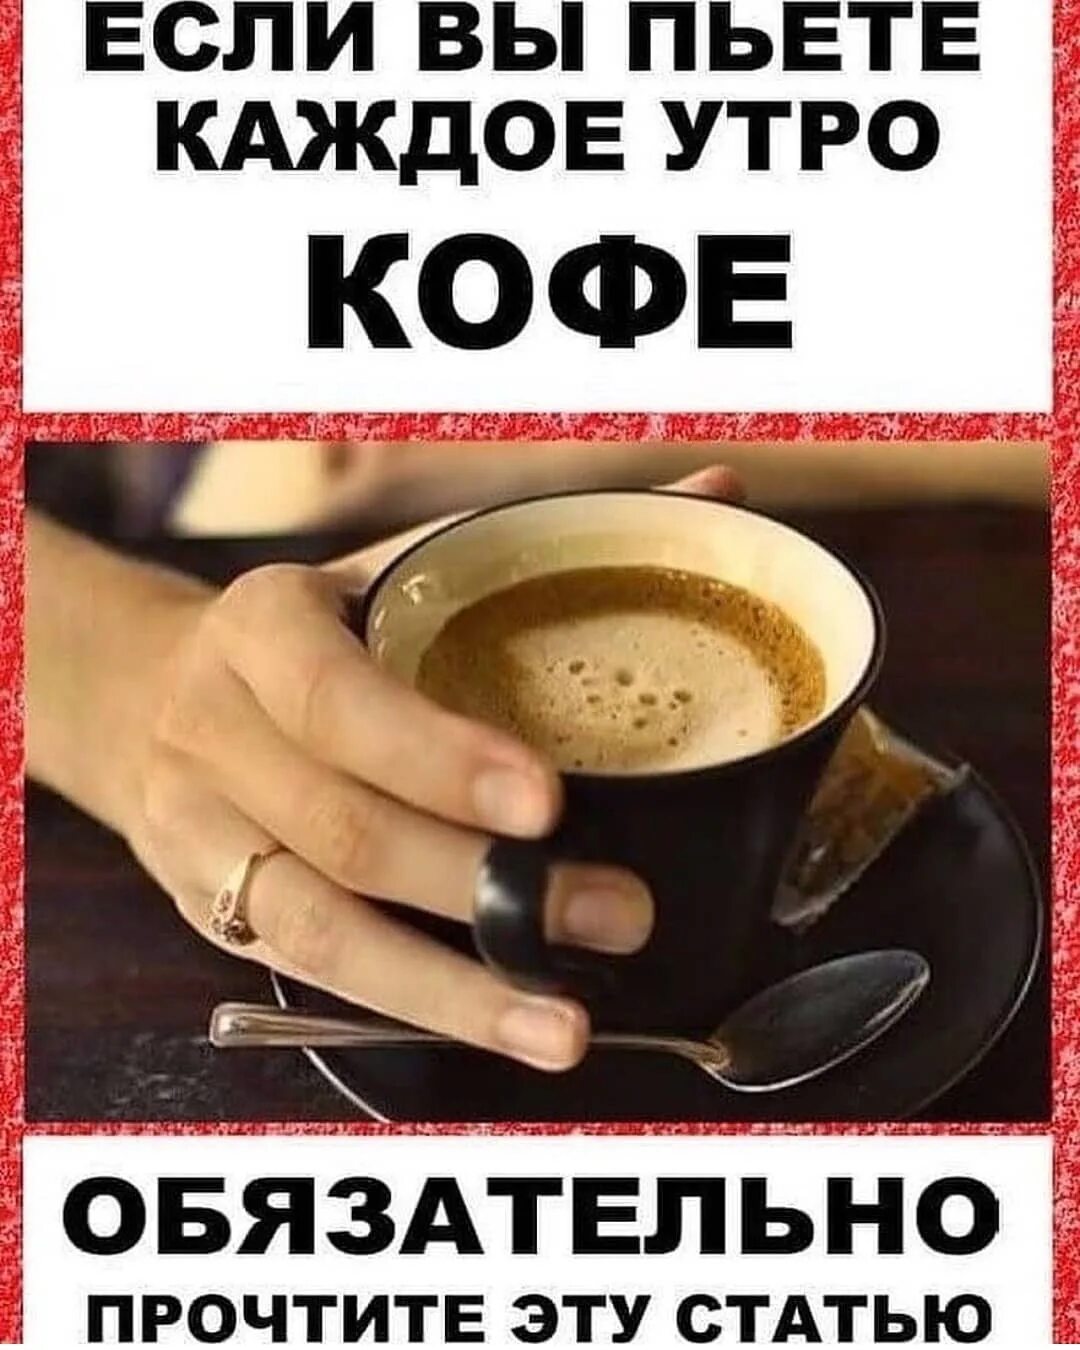 Попит дешево. С утра выпьешь кофе. Каждое утро кофе. Пить кофе по утрам. Выпить кофе.